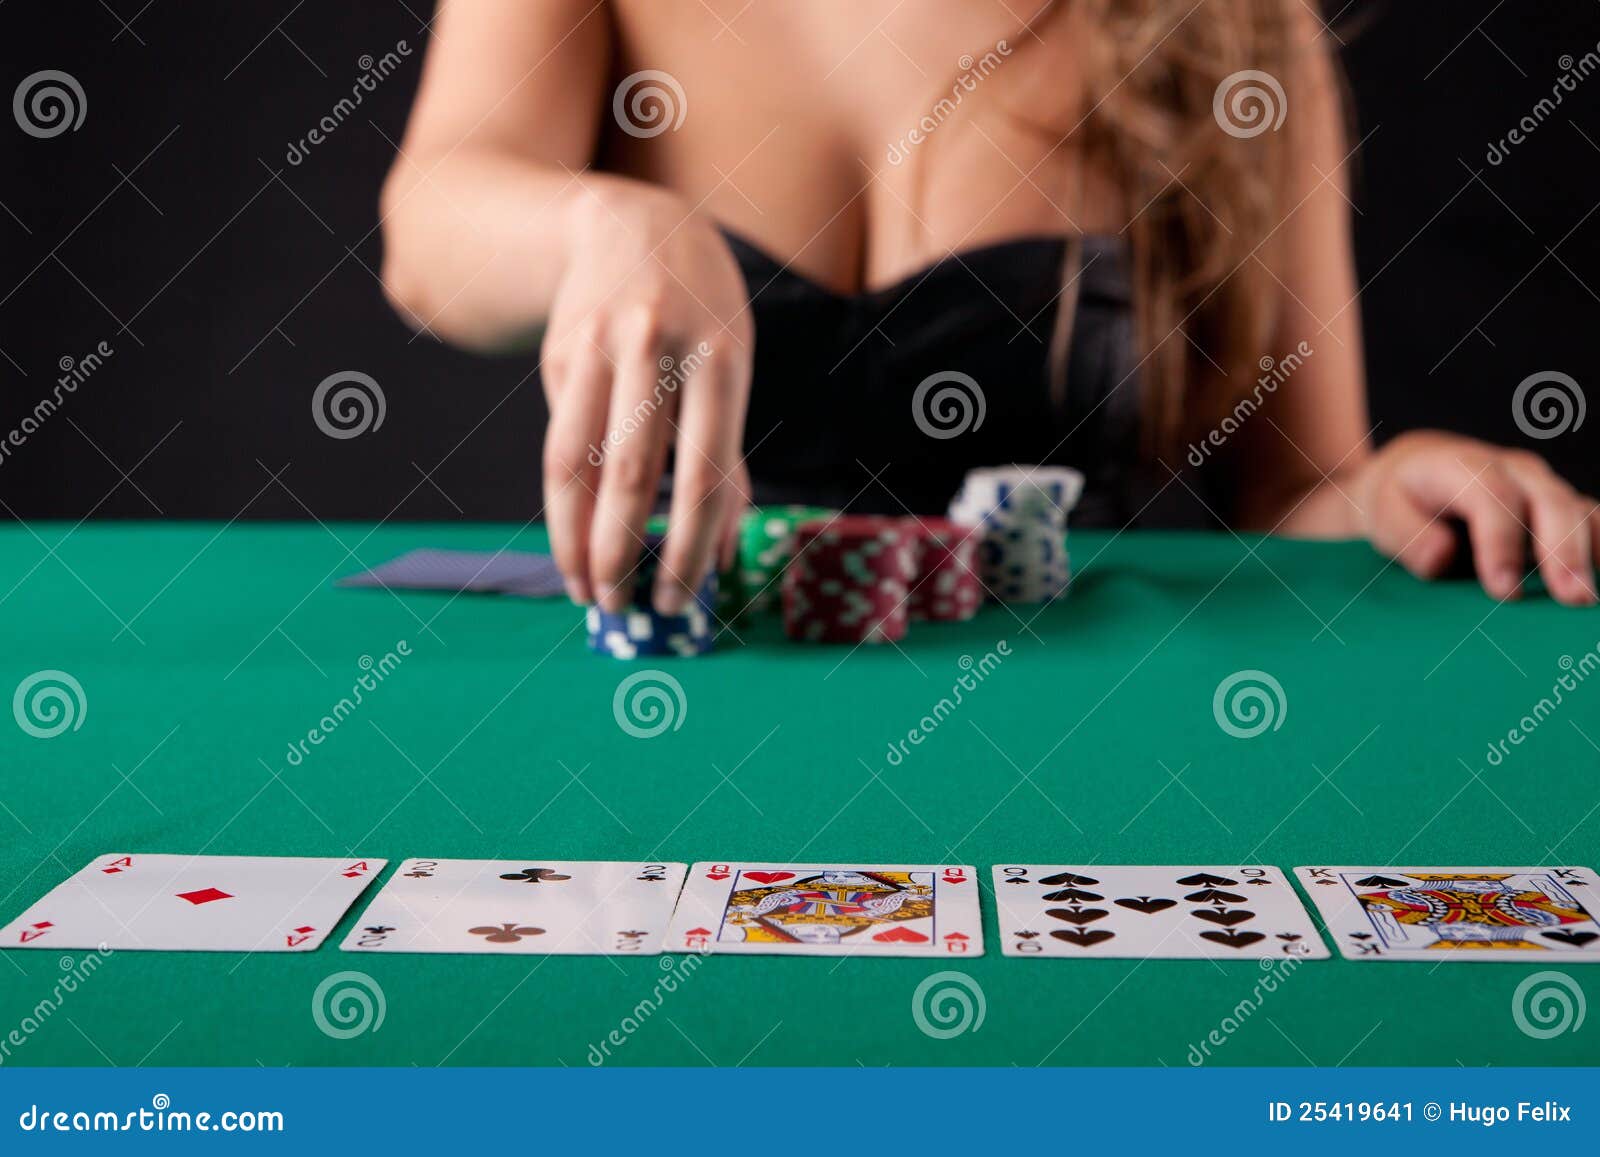 Жена карты раздевание. Покер девушки. Красивые дамы в покере. Красивая девушка крупье в Покер. Покер Эстетика.